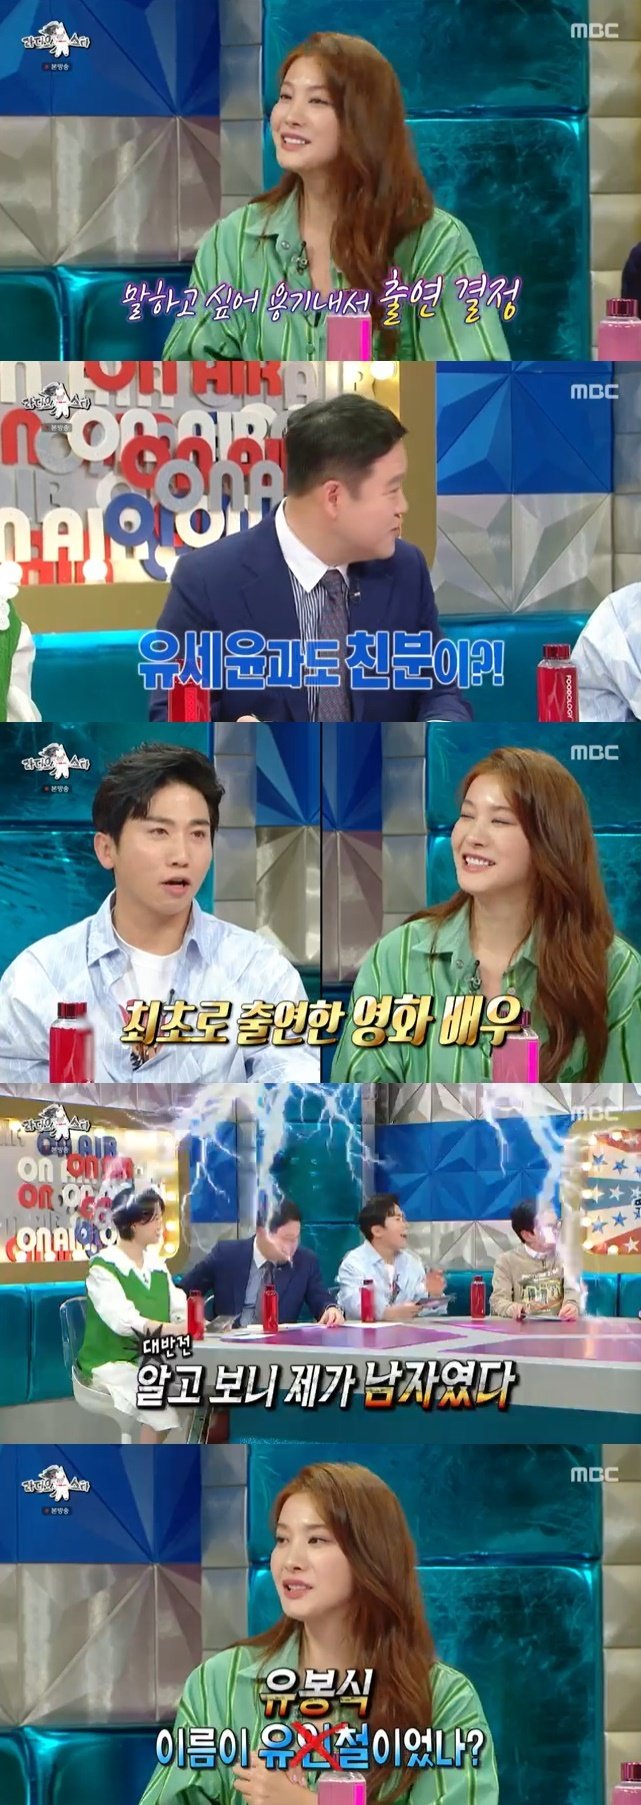 유인영, 유세윤과 친분 공개…UV 뮤직비디오에 남자 역할로 출연